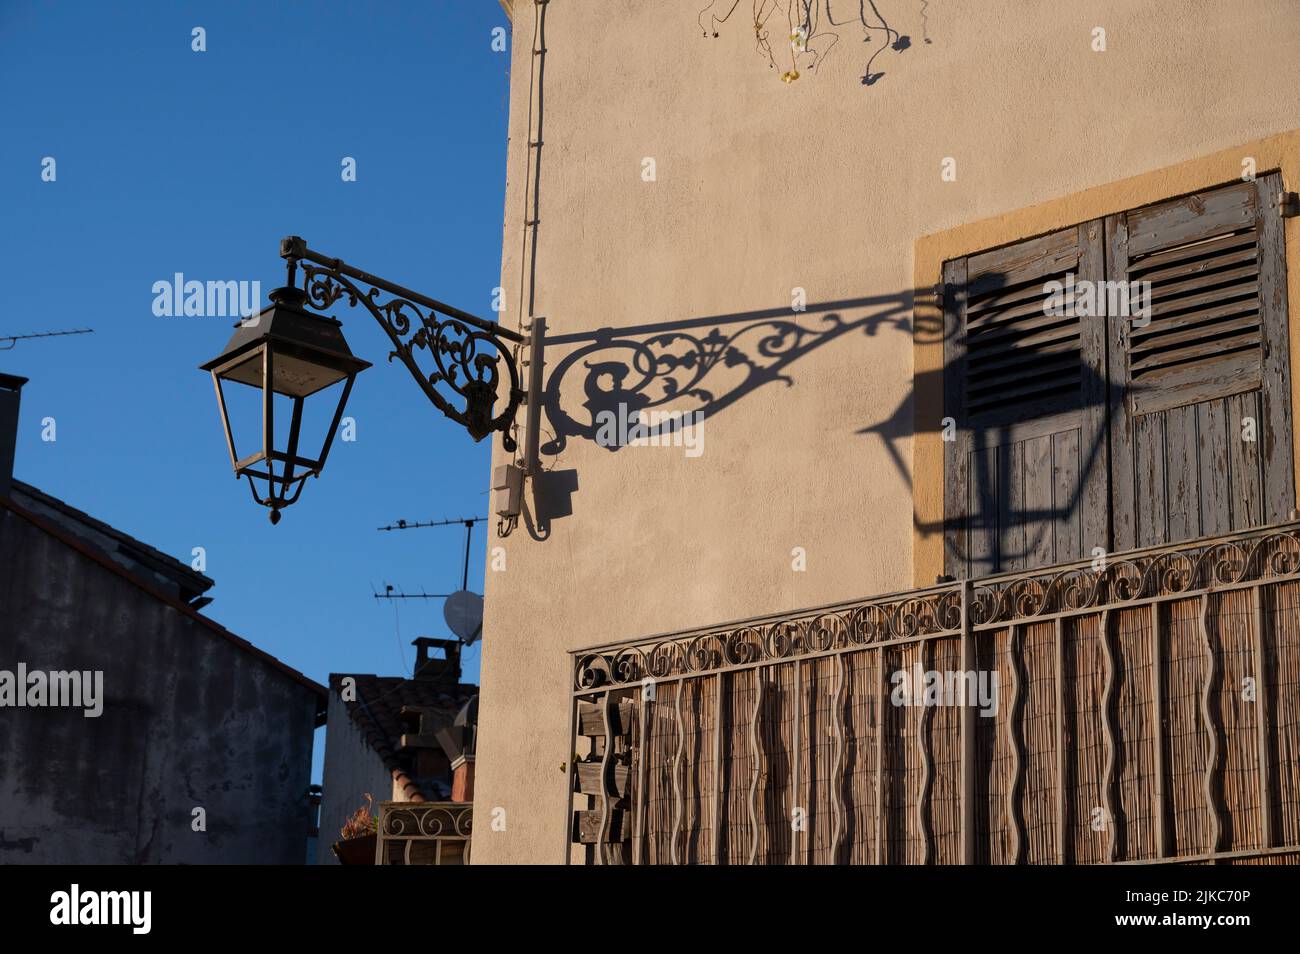 Arles, Francia. Antigua lámpara de hierro forjado Foto de stock